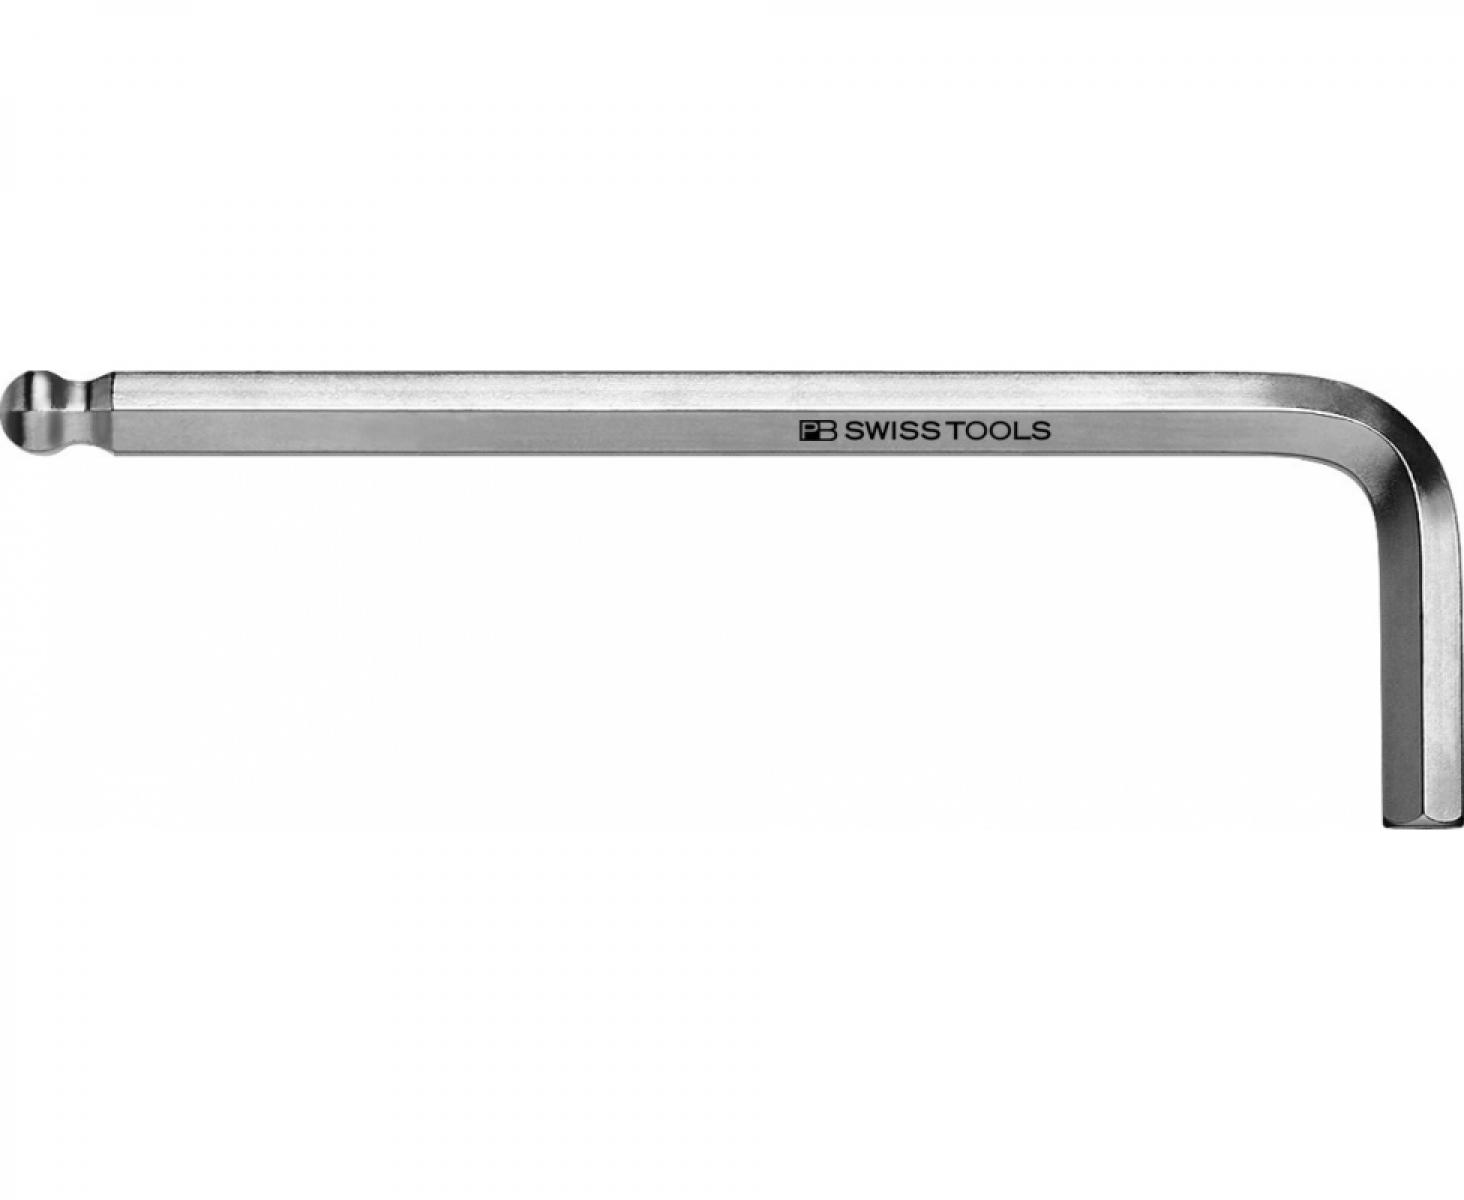 Ключ штифтовый HEX PB Swiss Tools PB 212Z.7/32 со сферической головкой дюймовый